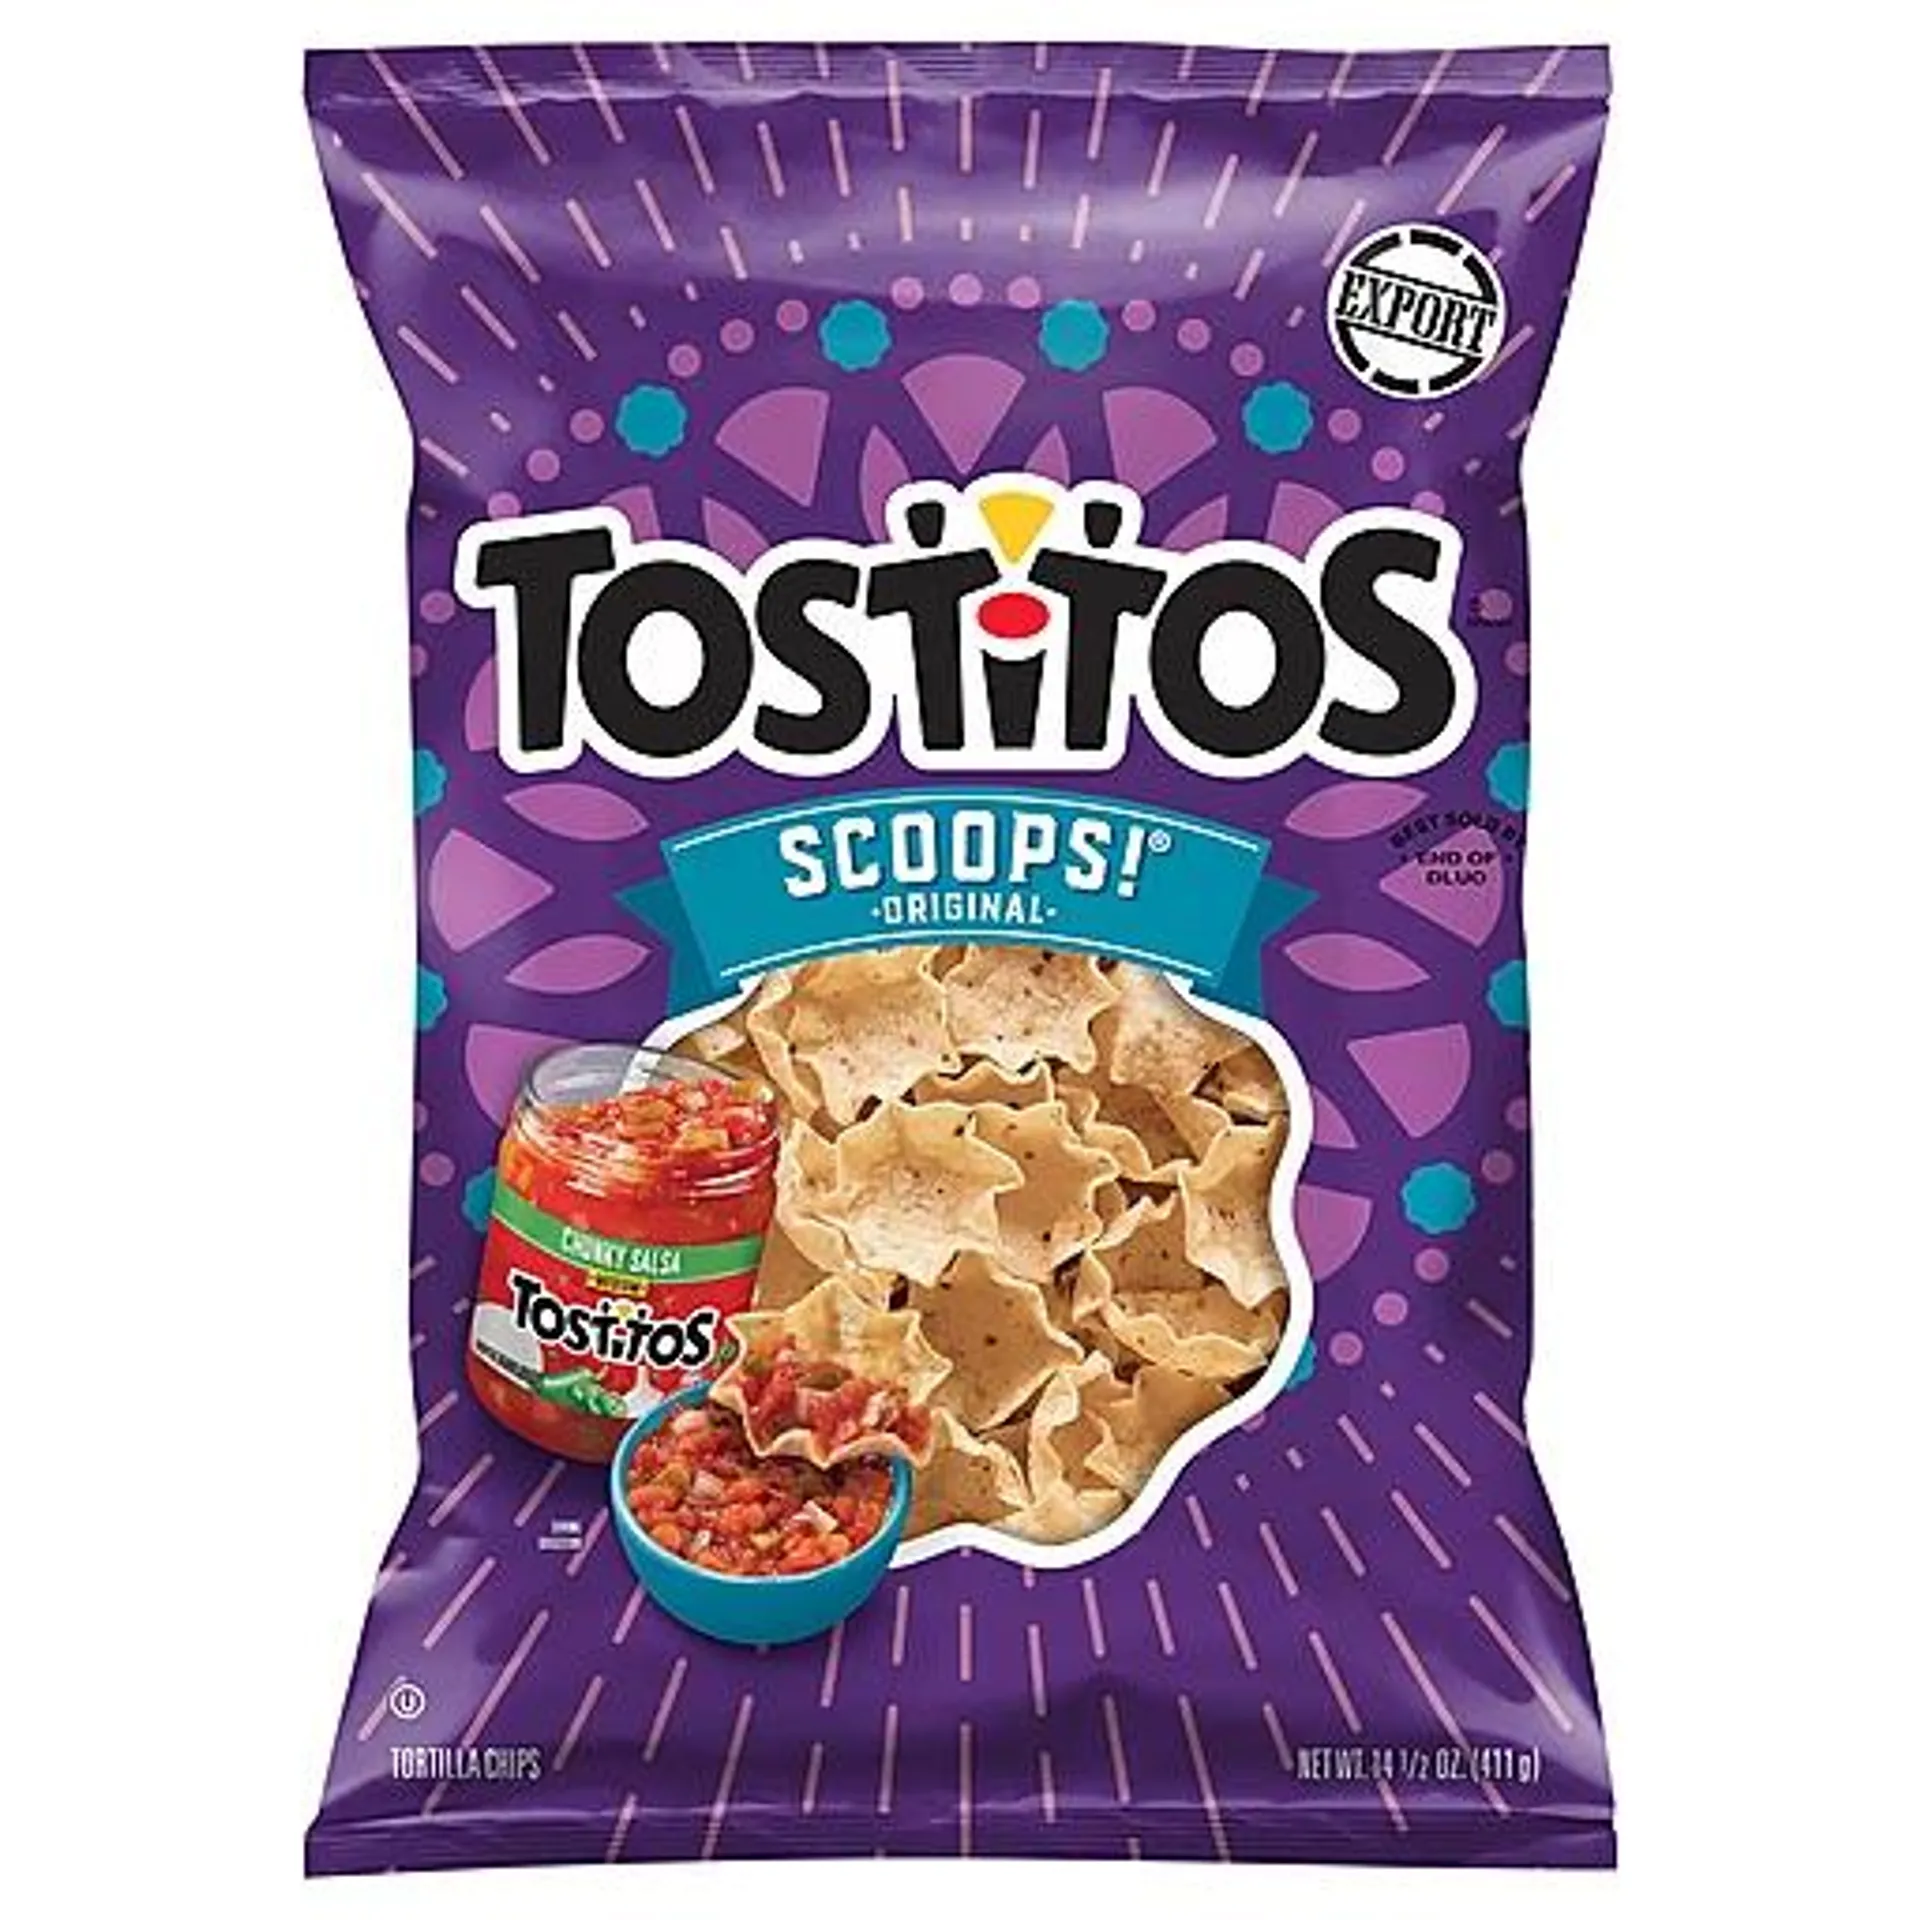 Tostitos Scoops Tortilla Chips 14.5 oz bag